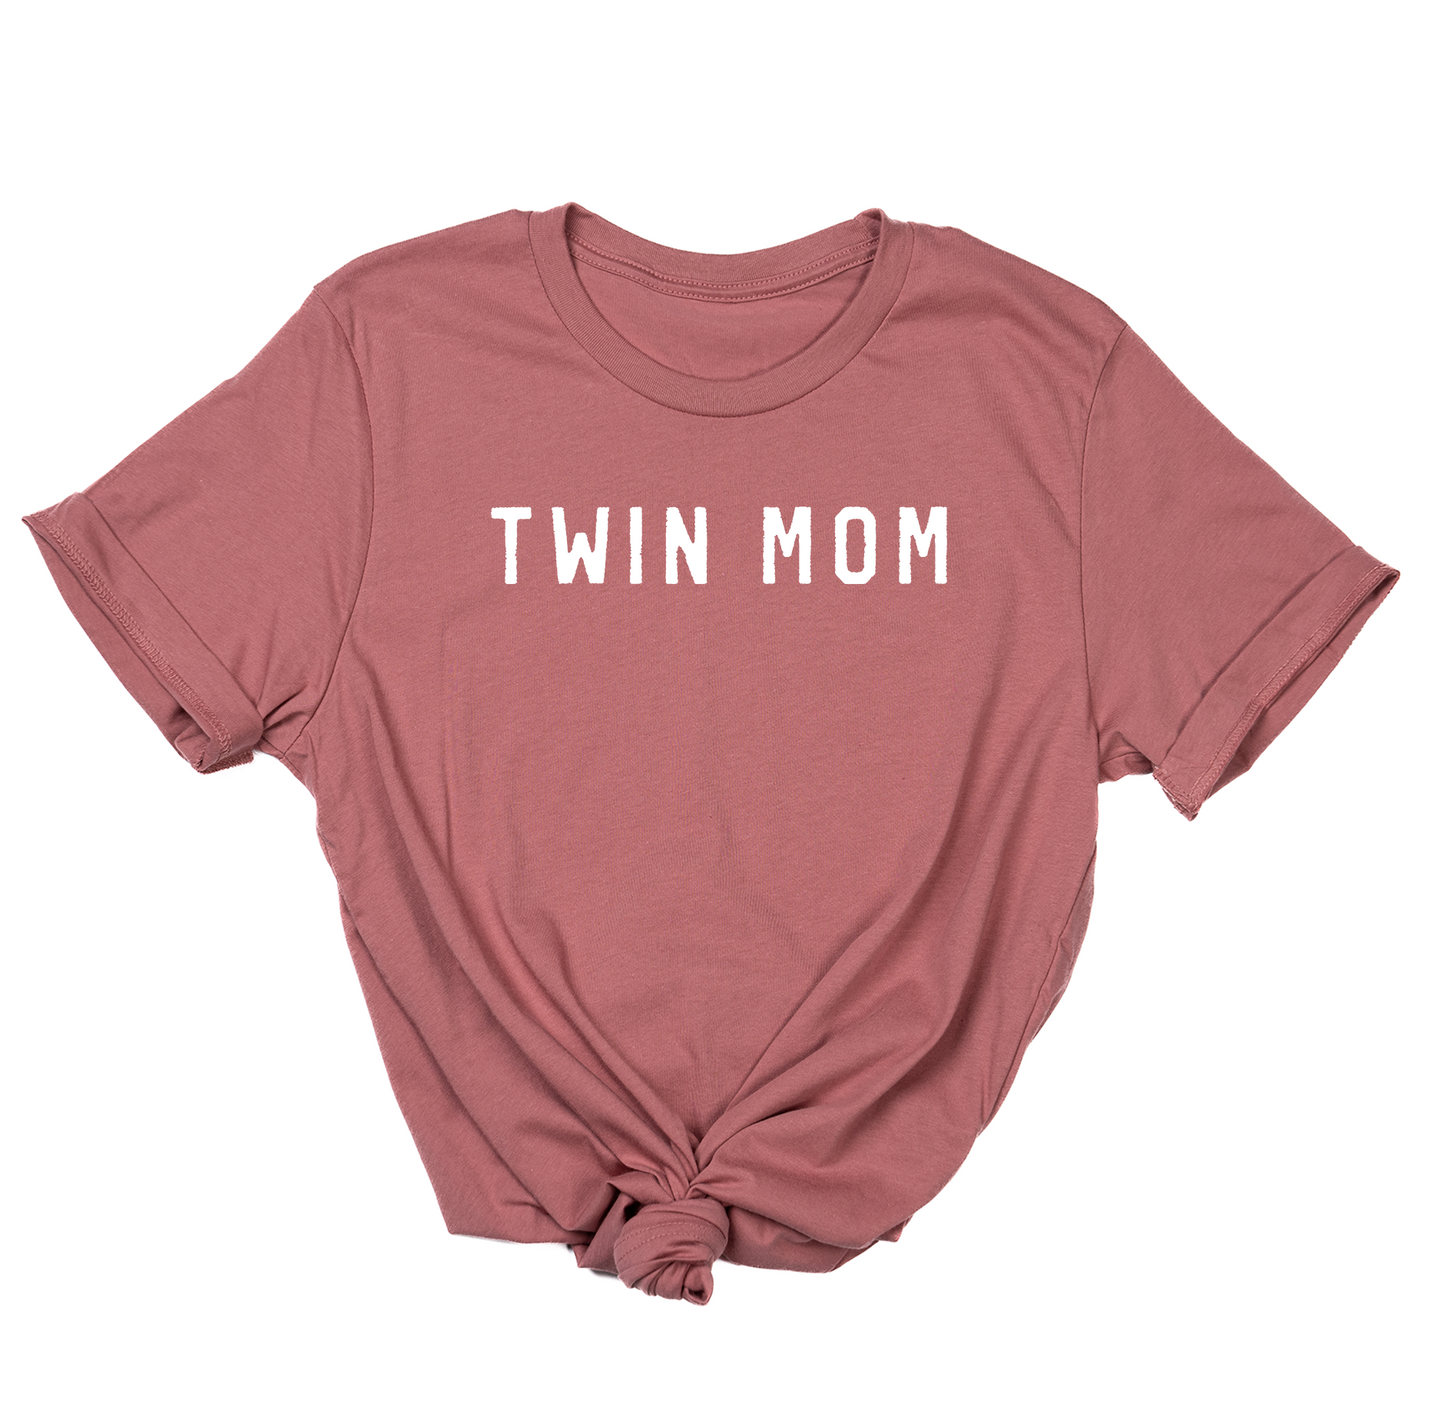 Twin Mom (White) - Tee (Mauve)